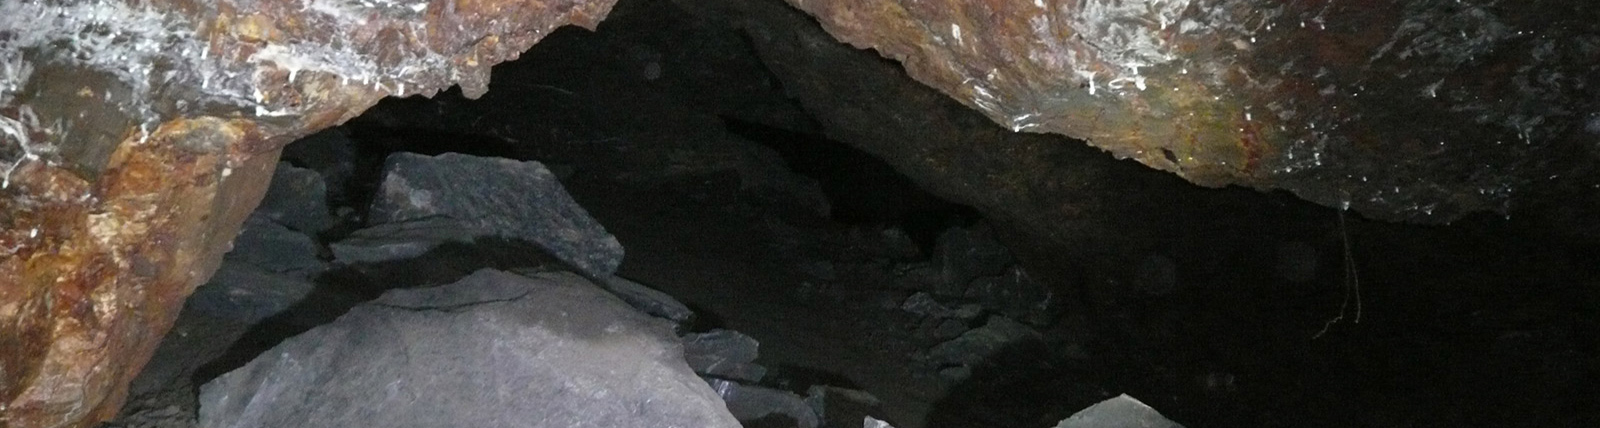 cueva con minerales